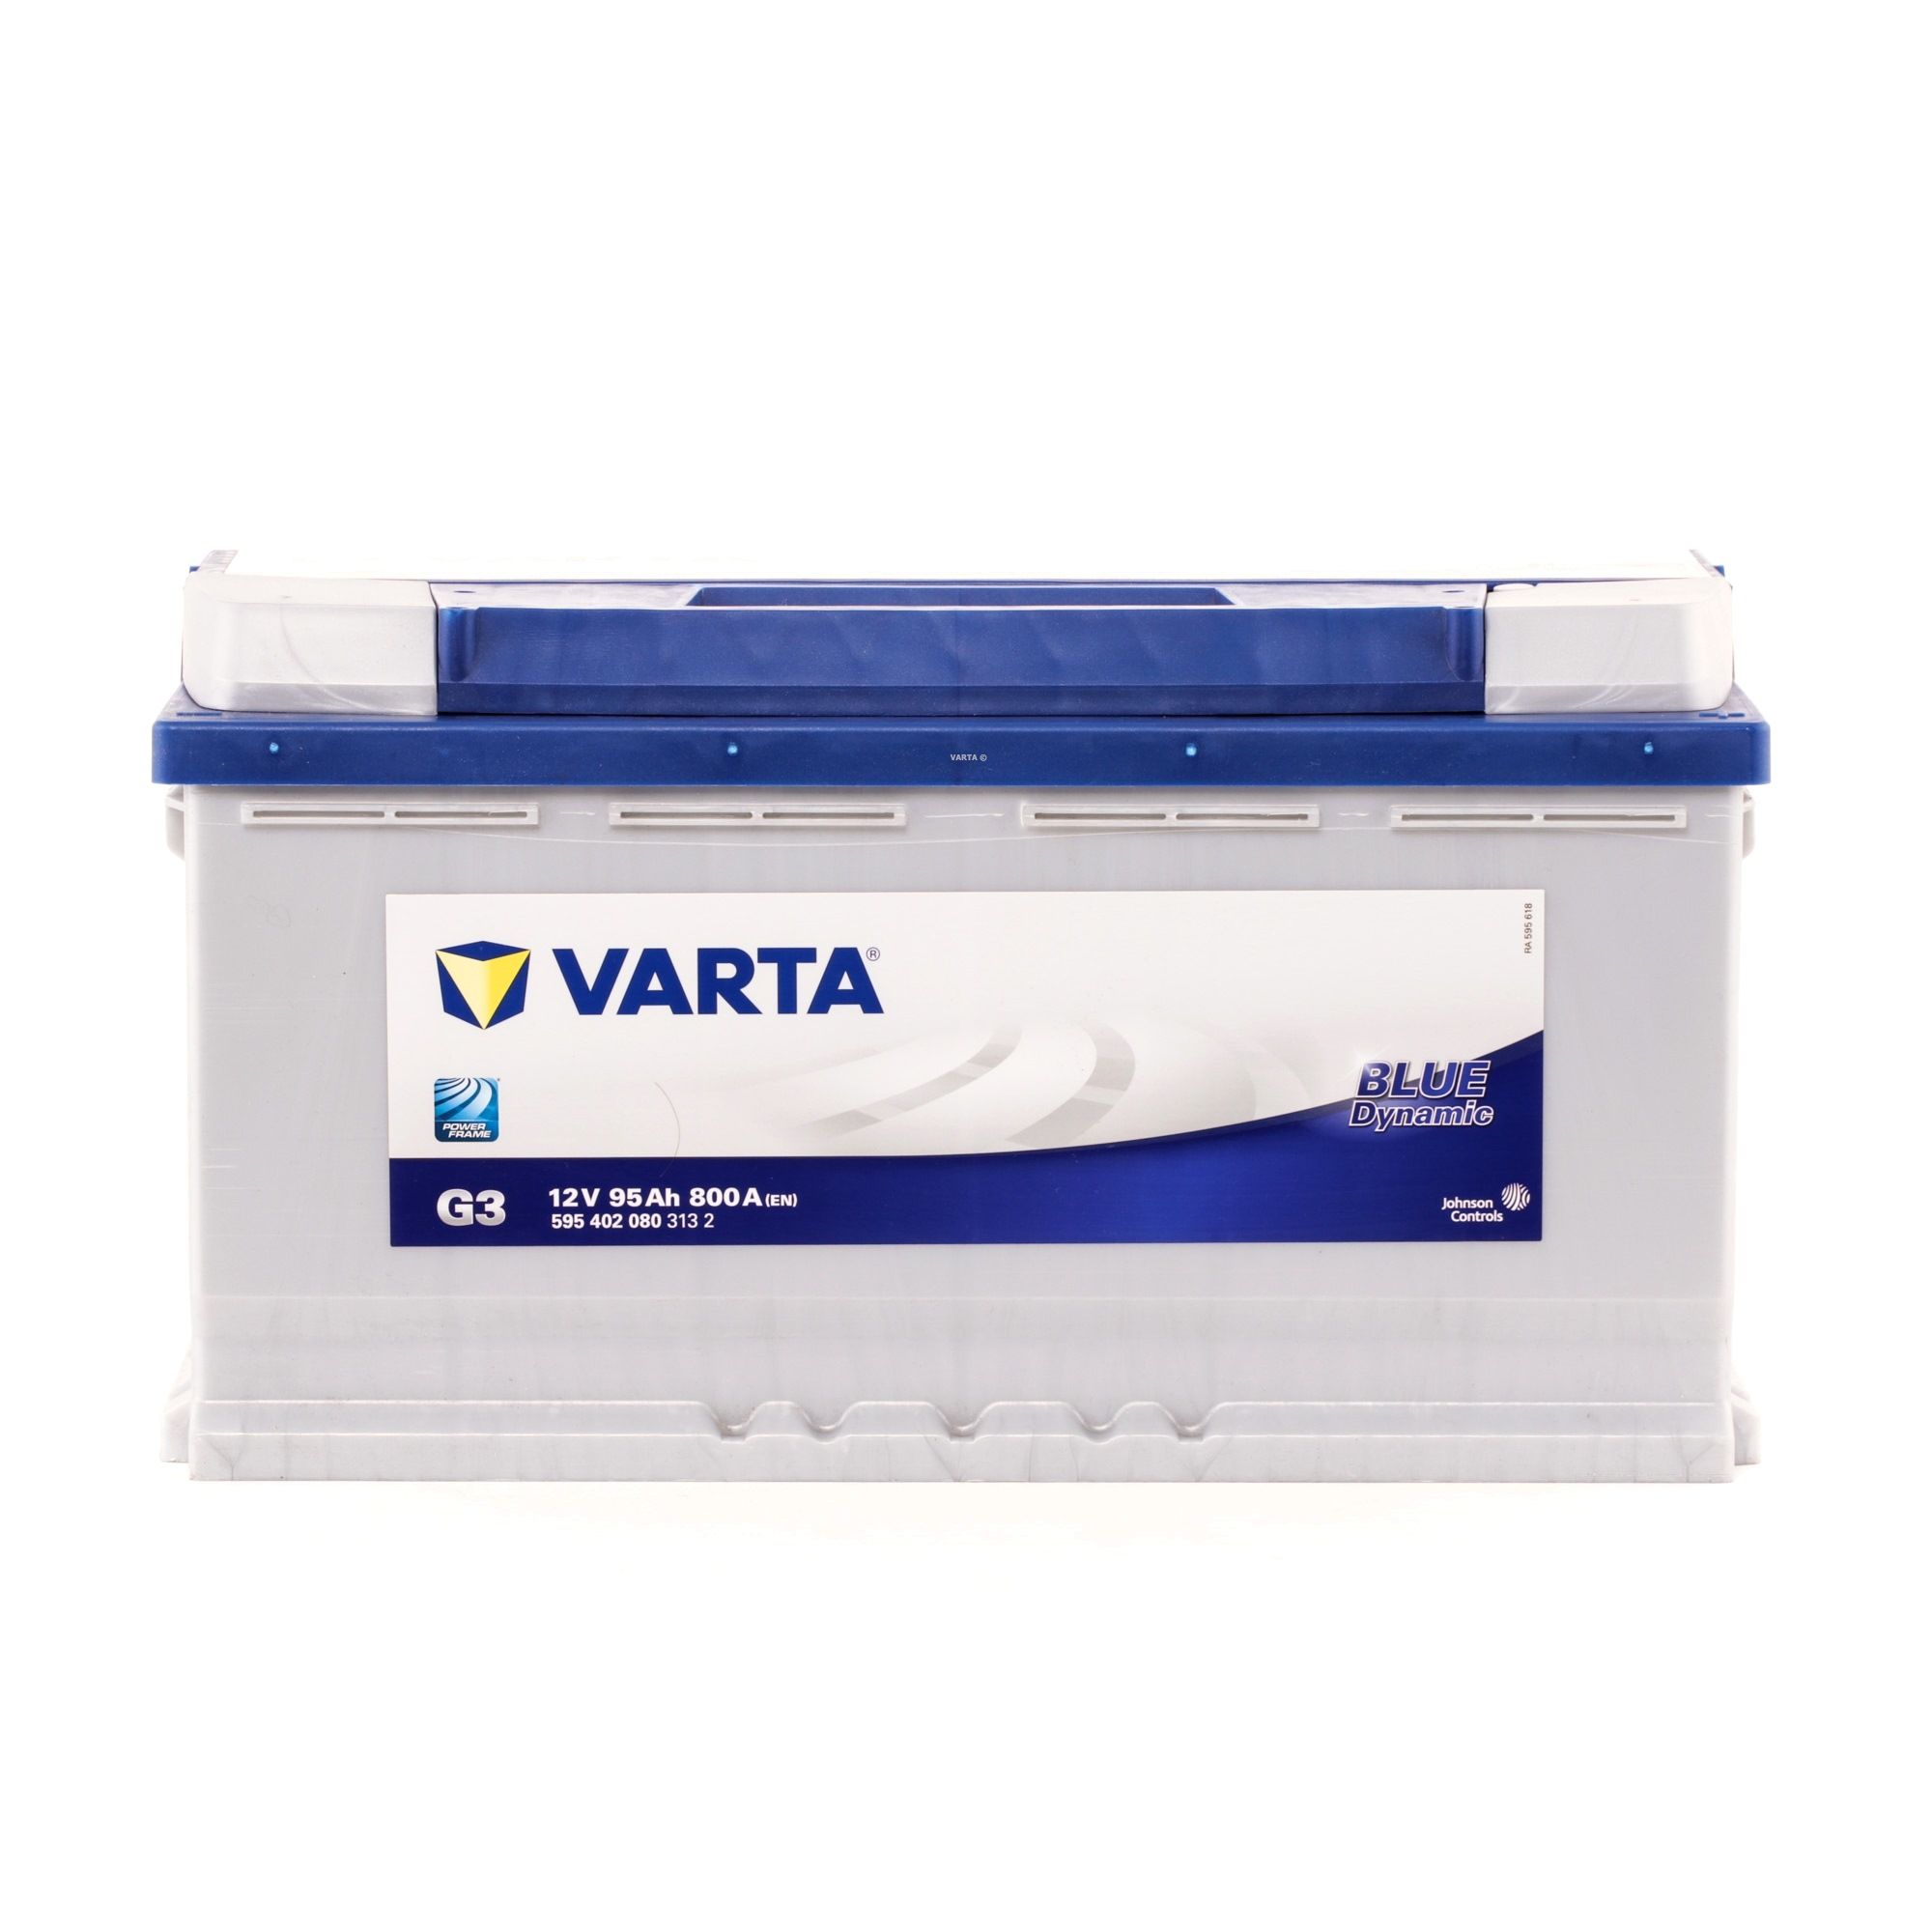 VARTA 5954020803132 d'origine MERCEDES-BENZ Batterie de démarrage 12V 95Ah 800A B13 insensibilité aux secousses augmentée